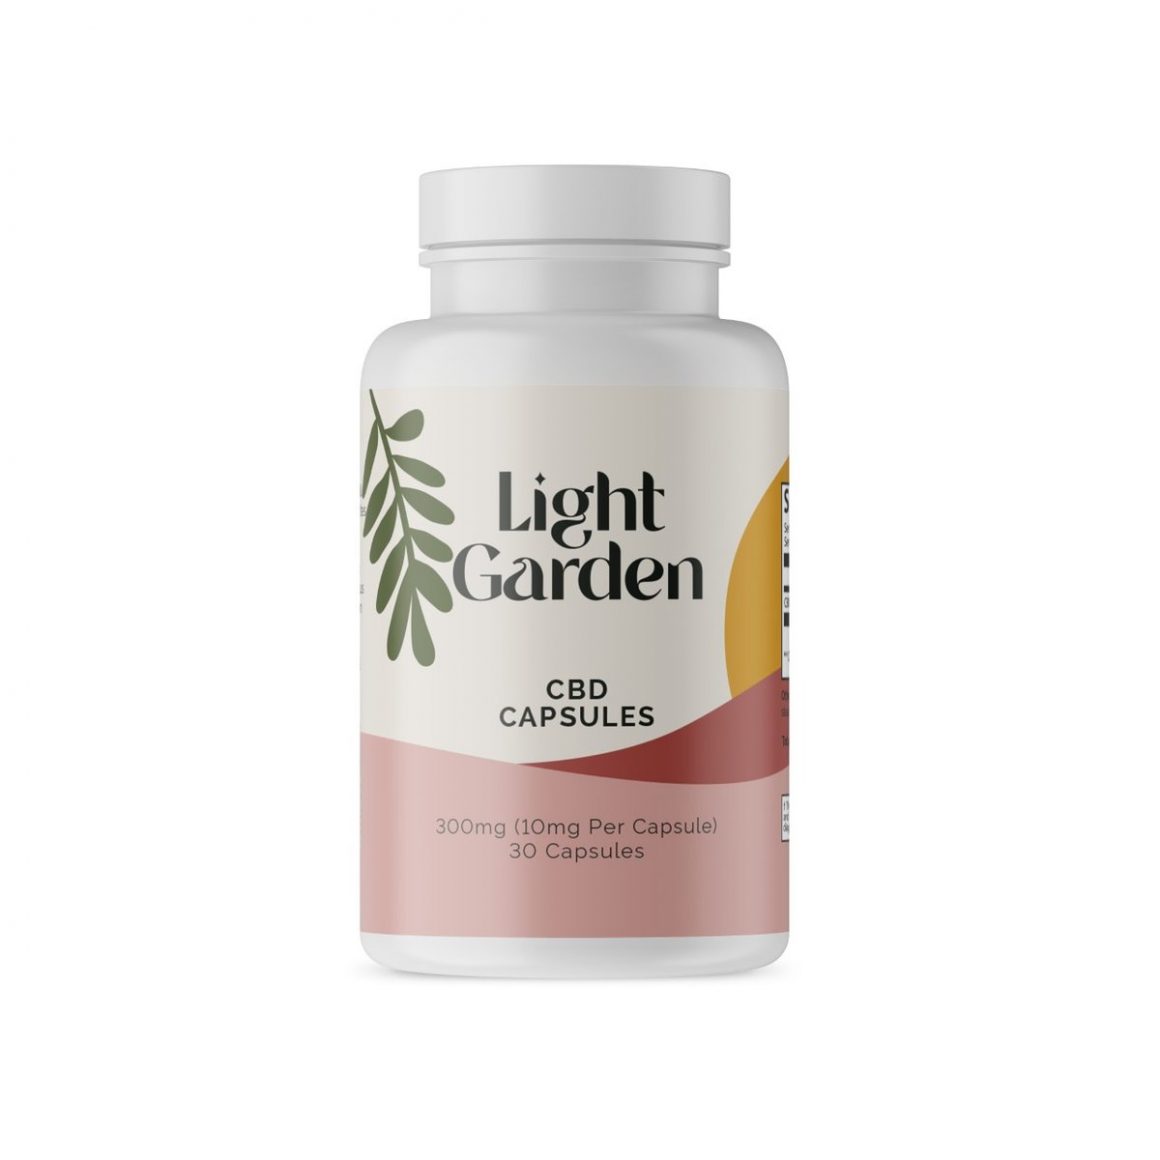 lightgarden cbd capsules